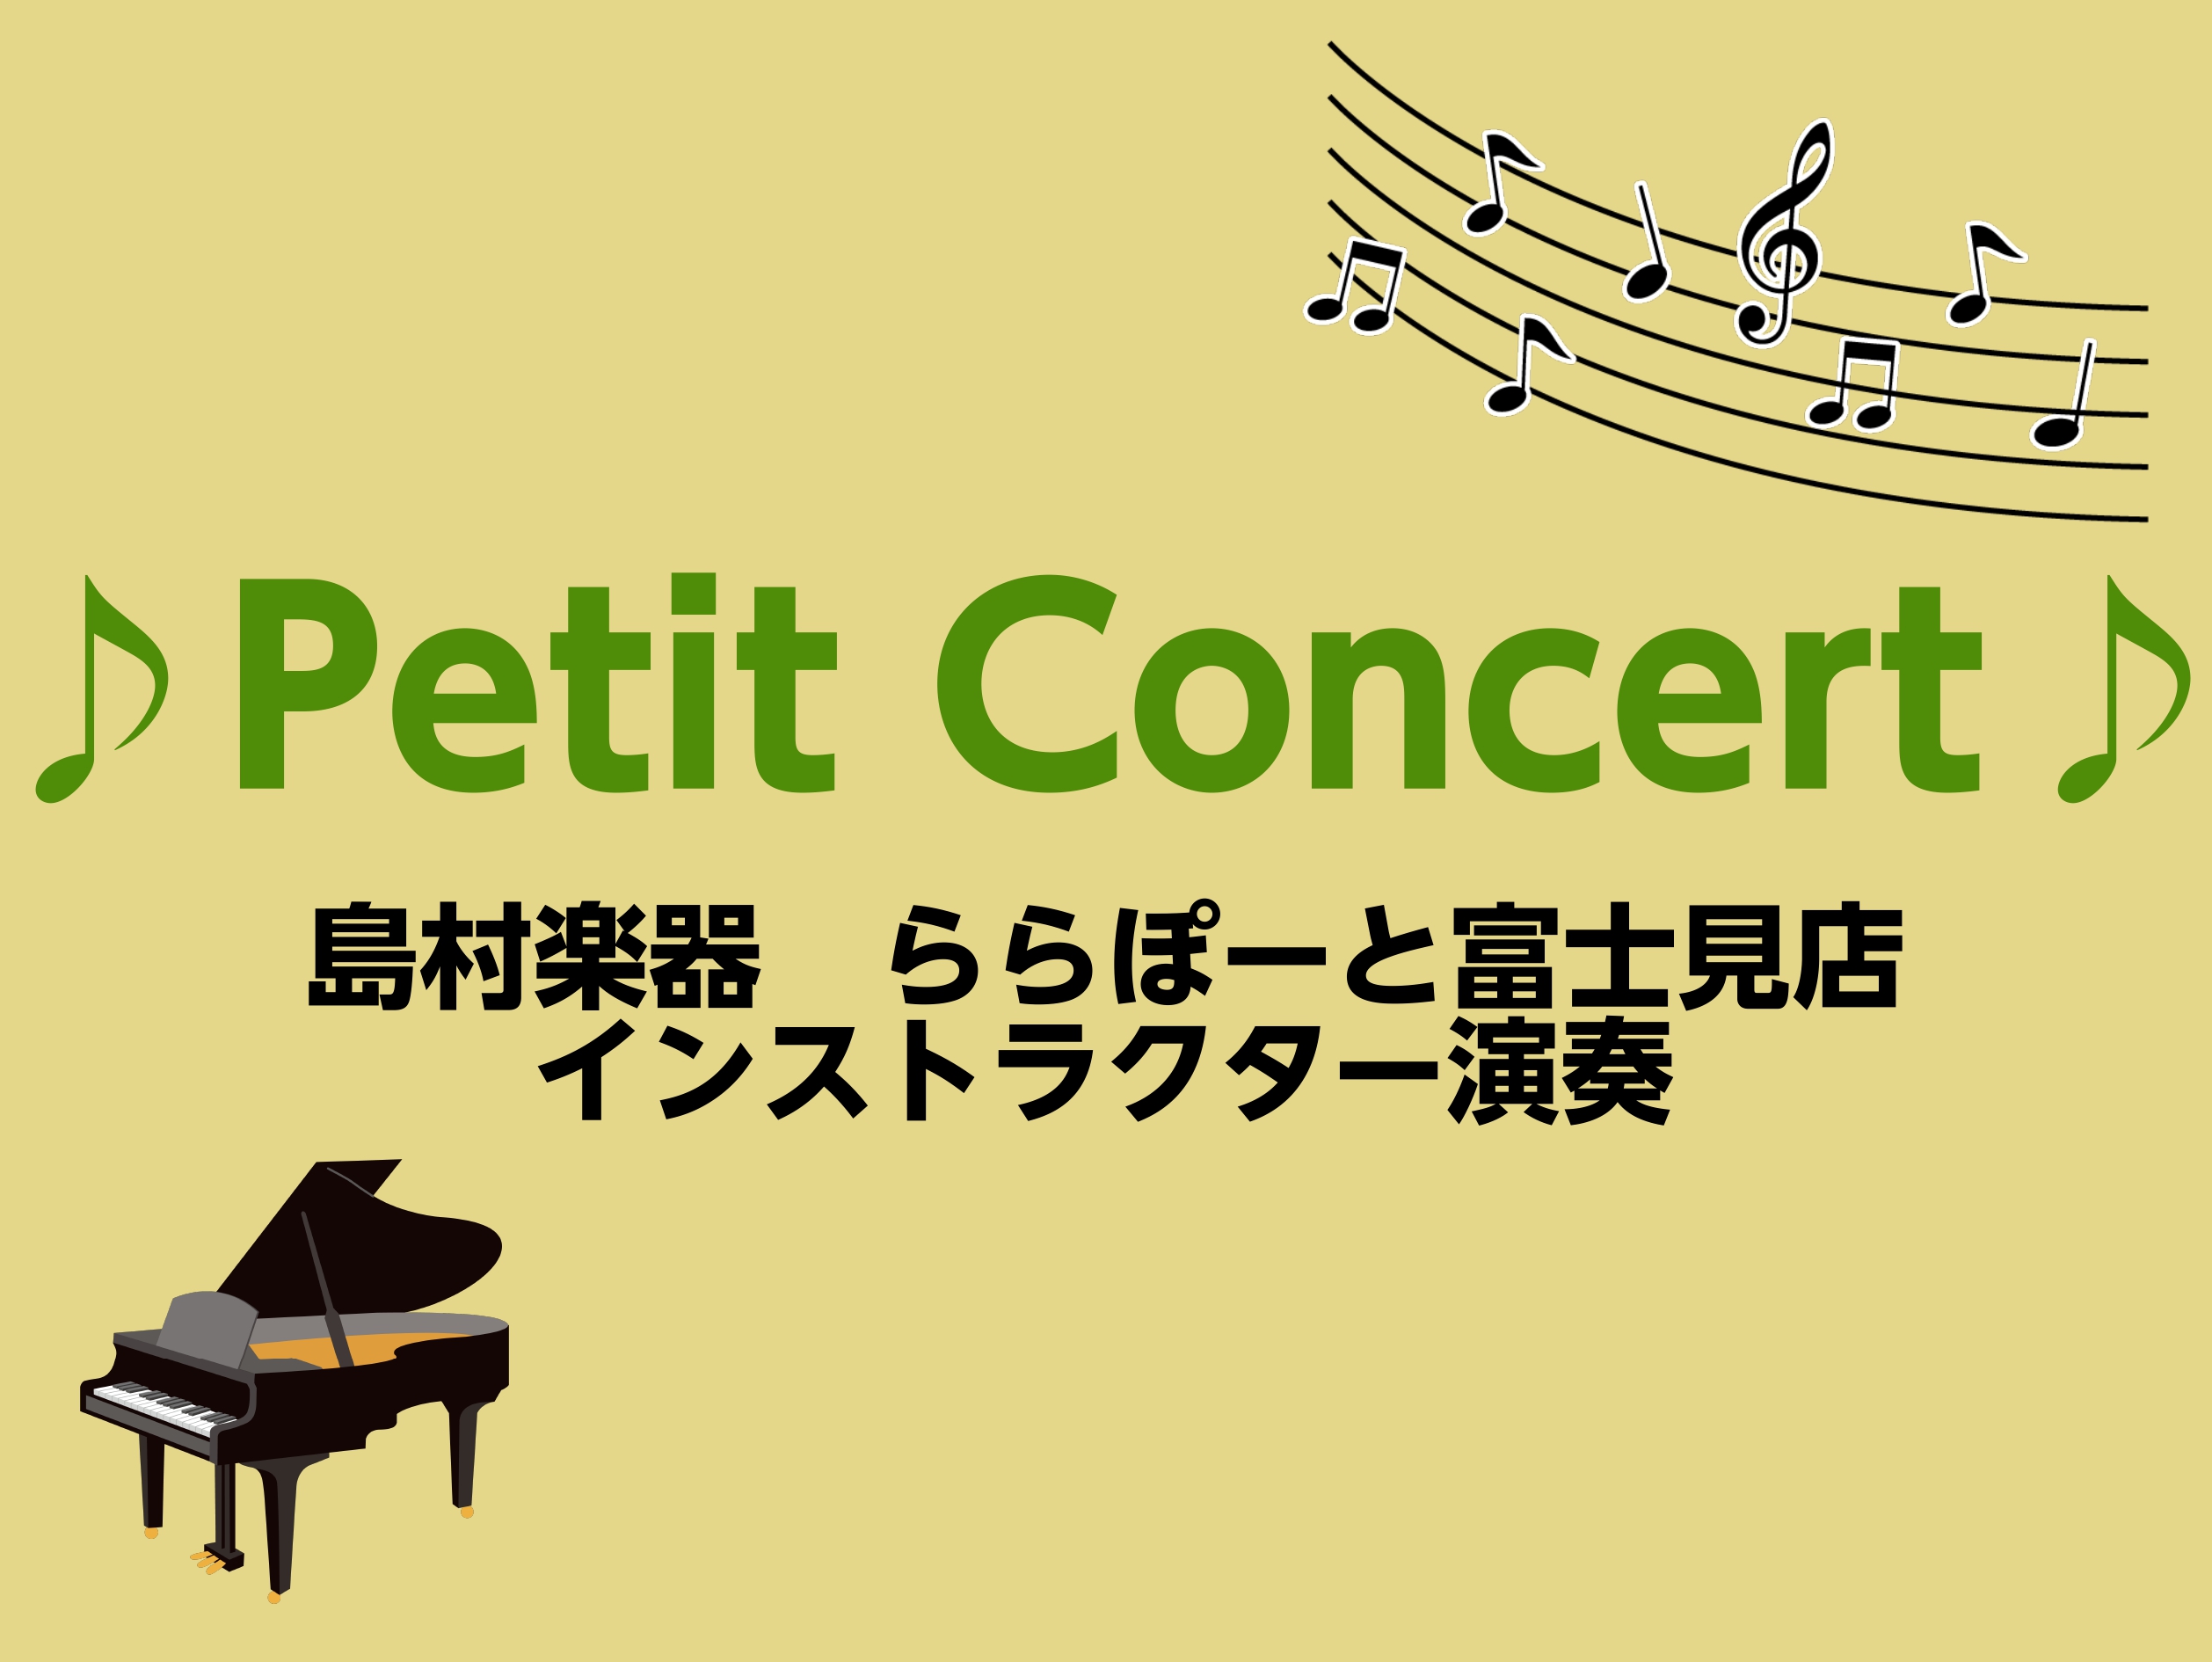 CONTENTS『ピアノPetit Concert』開催！！演奏会詳細秋のご入会キャンペーンも実施中！お問合せ『ピアノPetit Concert』開催！！ 皆さまこんにちは！ピアノインストラクターの吉岡です。 10月21日(土)に店頭ピアノフロアにて『ピアノPetit Concert』を開催すること […]